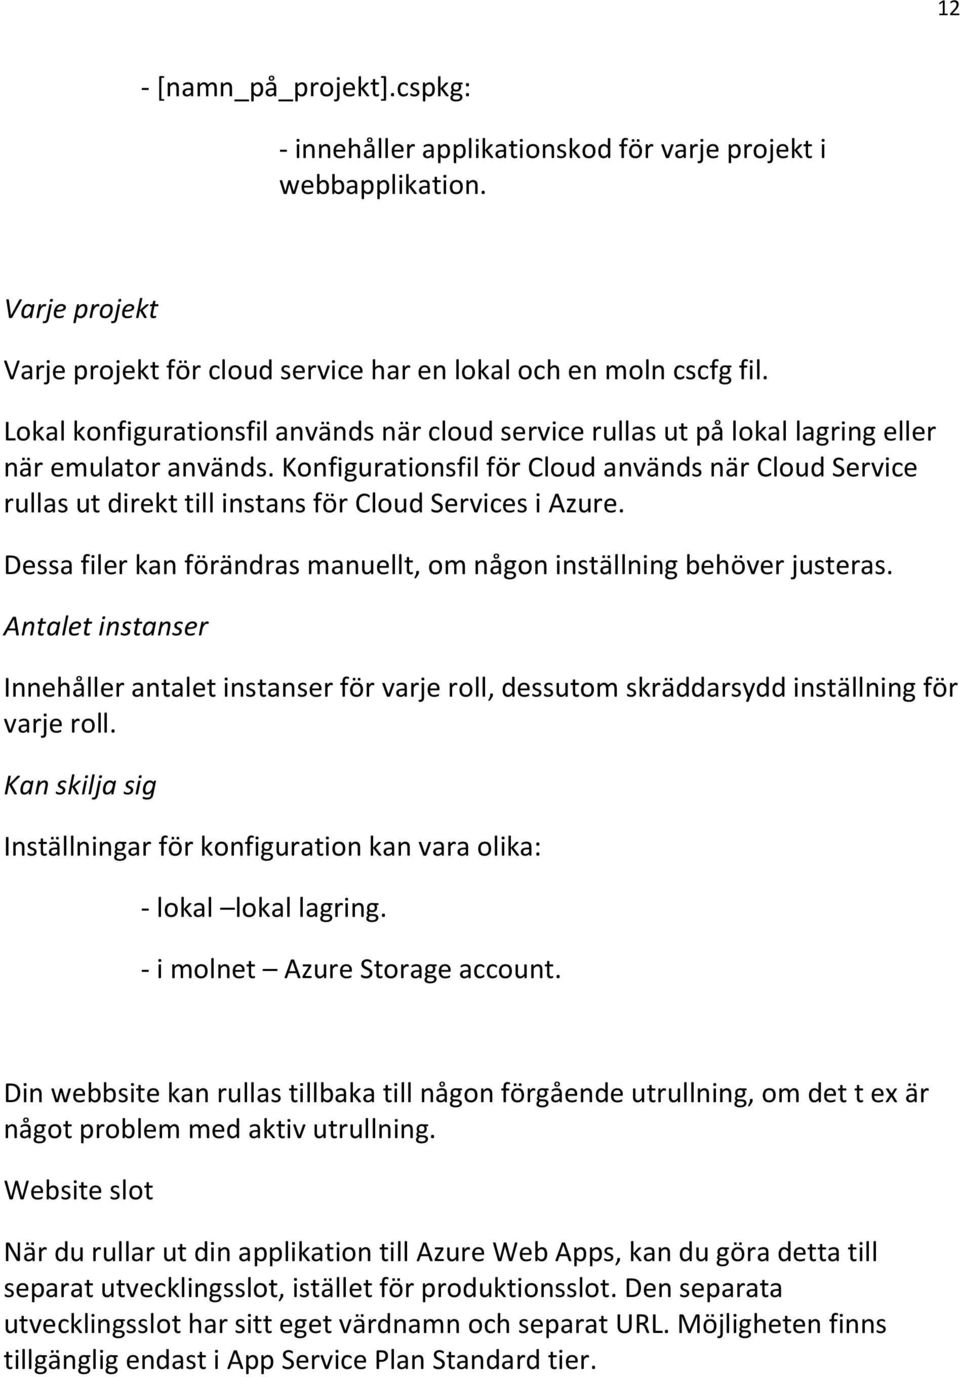 Konfigurationsfil för Cloud används när Cloud Service rullas ut direkt till instans för Cloud Services i Azure. Dessa filer kan förändras manuellt, om någon inställning behöver justeras.